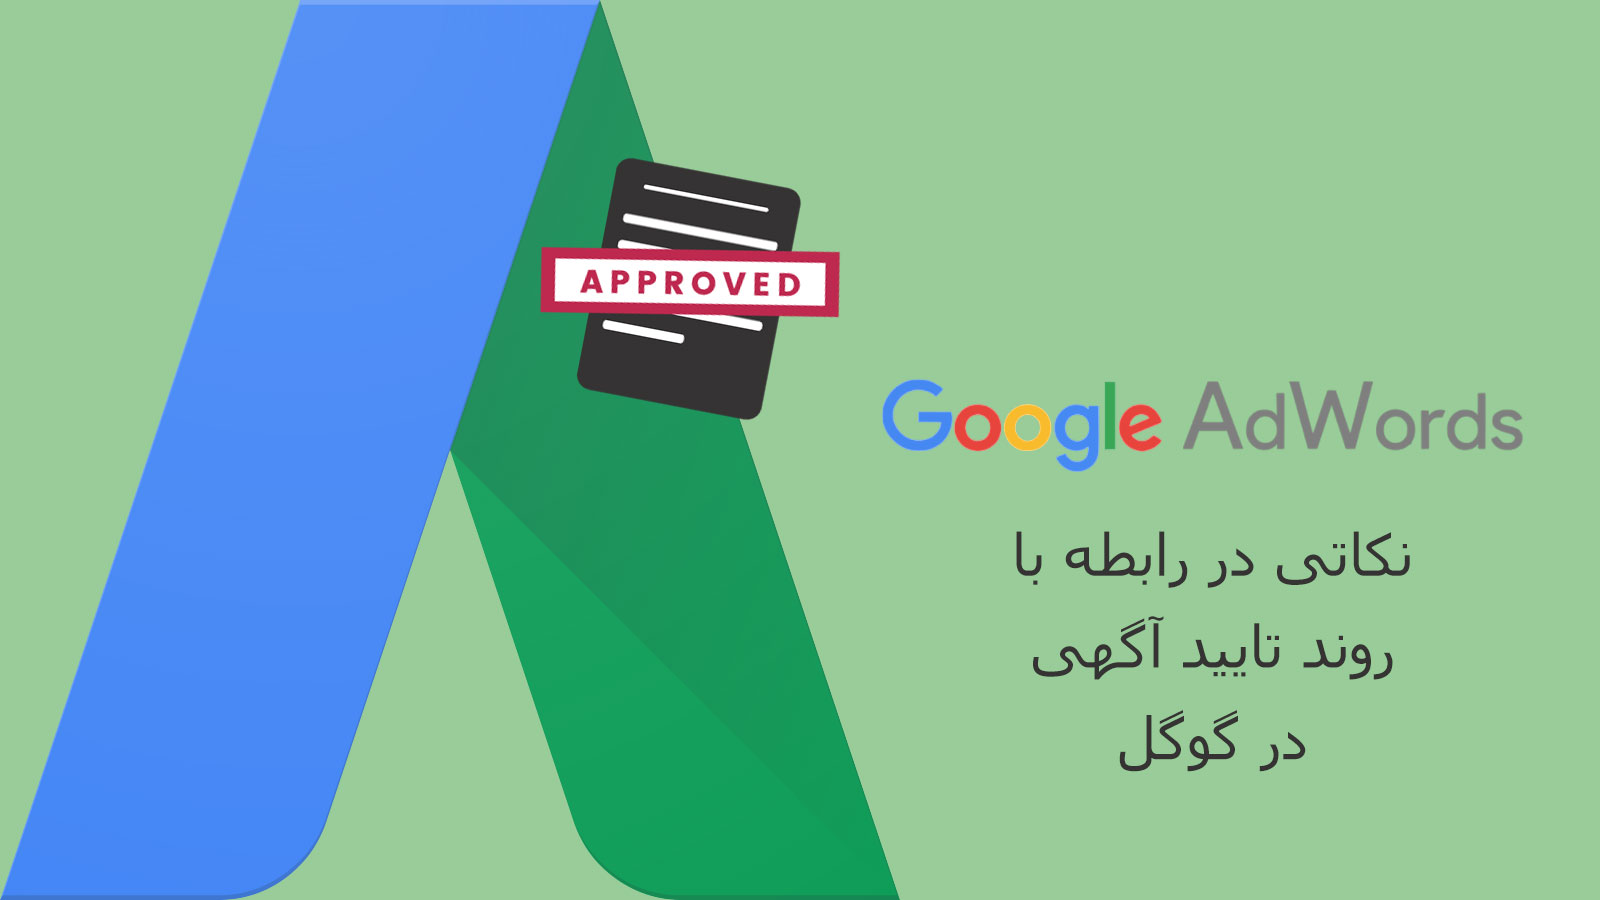 تایید آگهی در گوگل